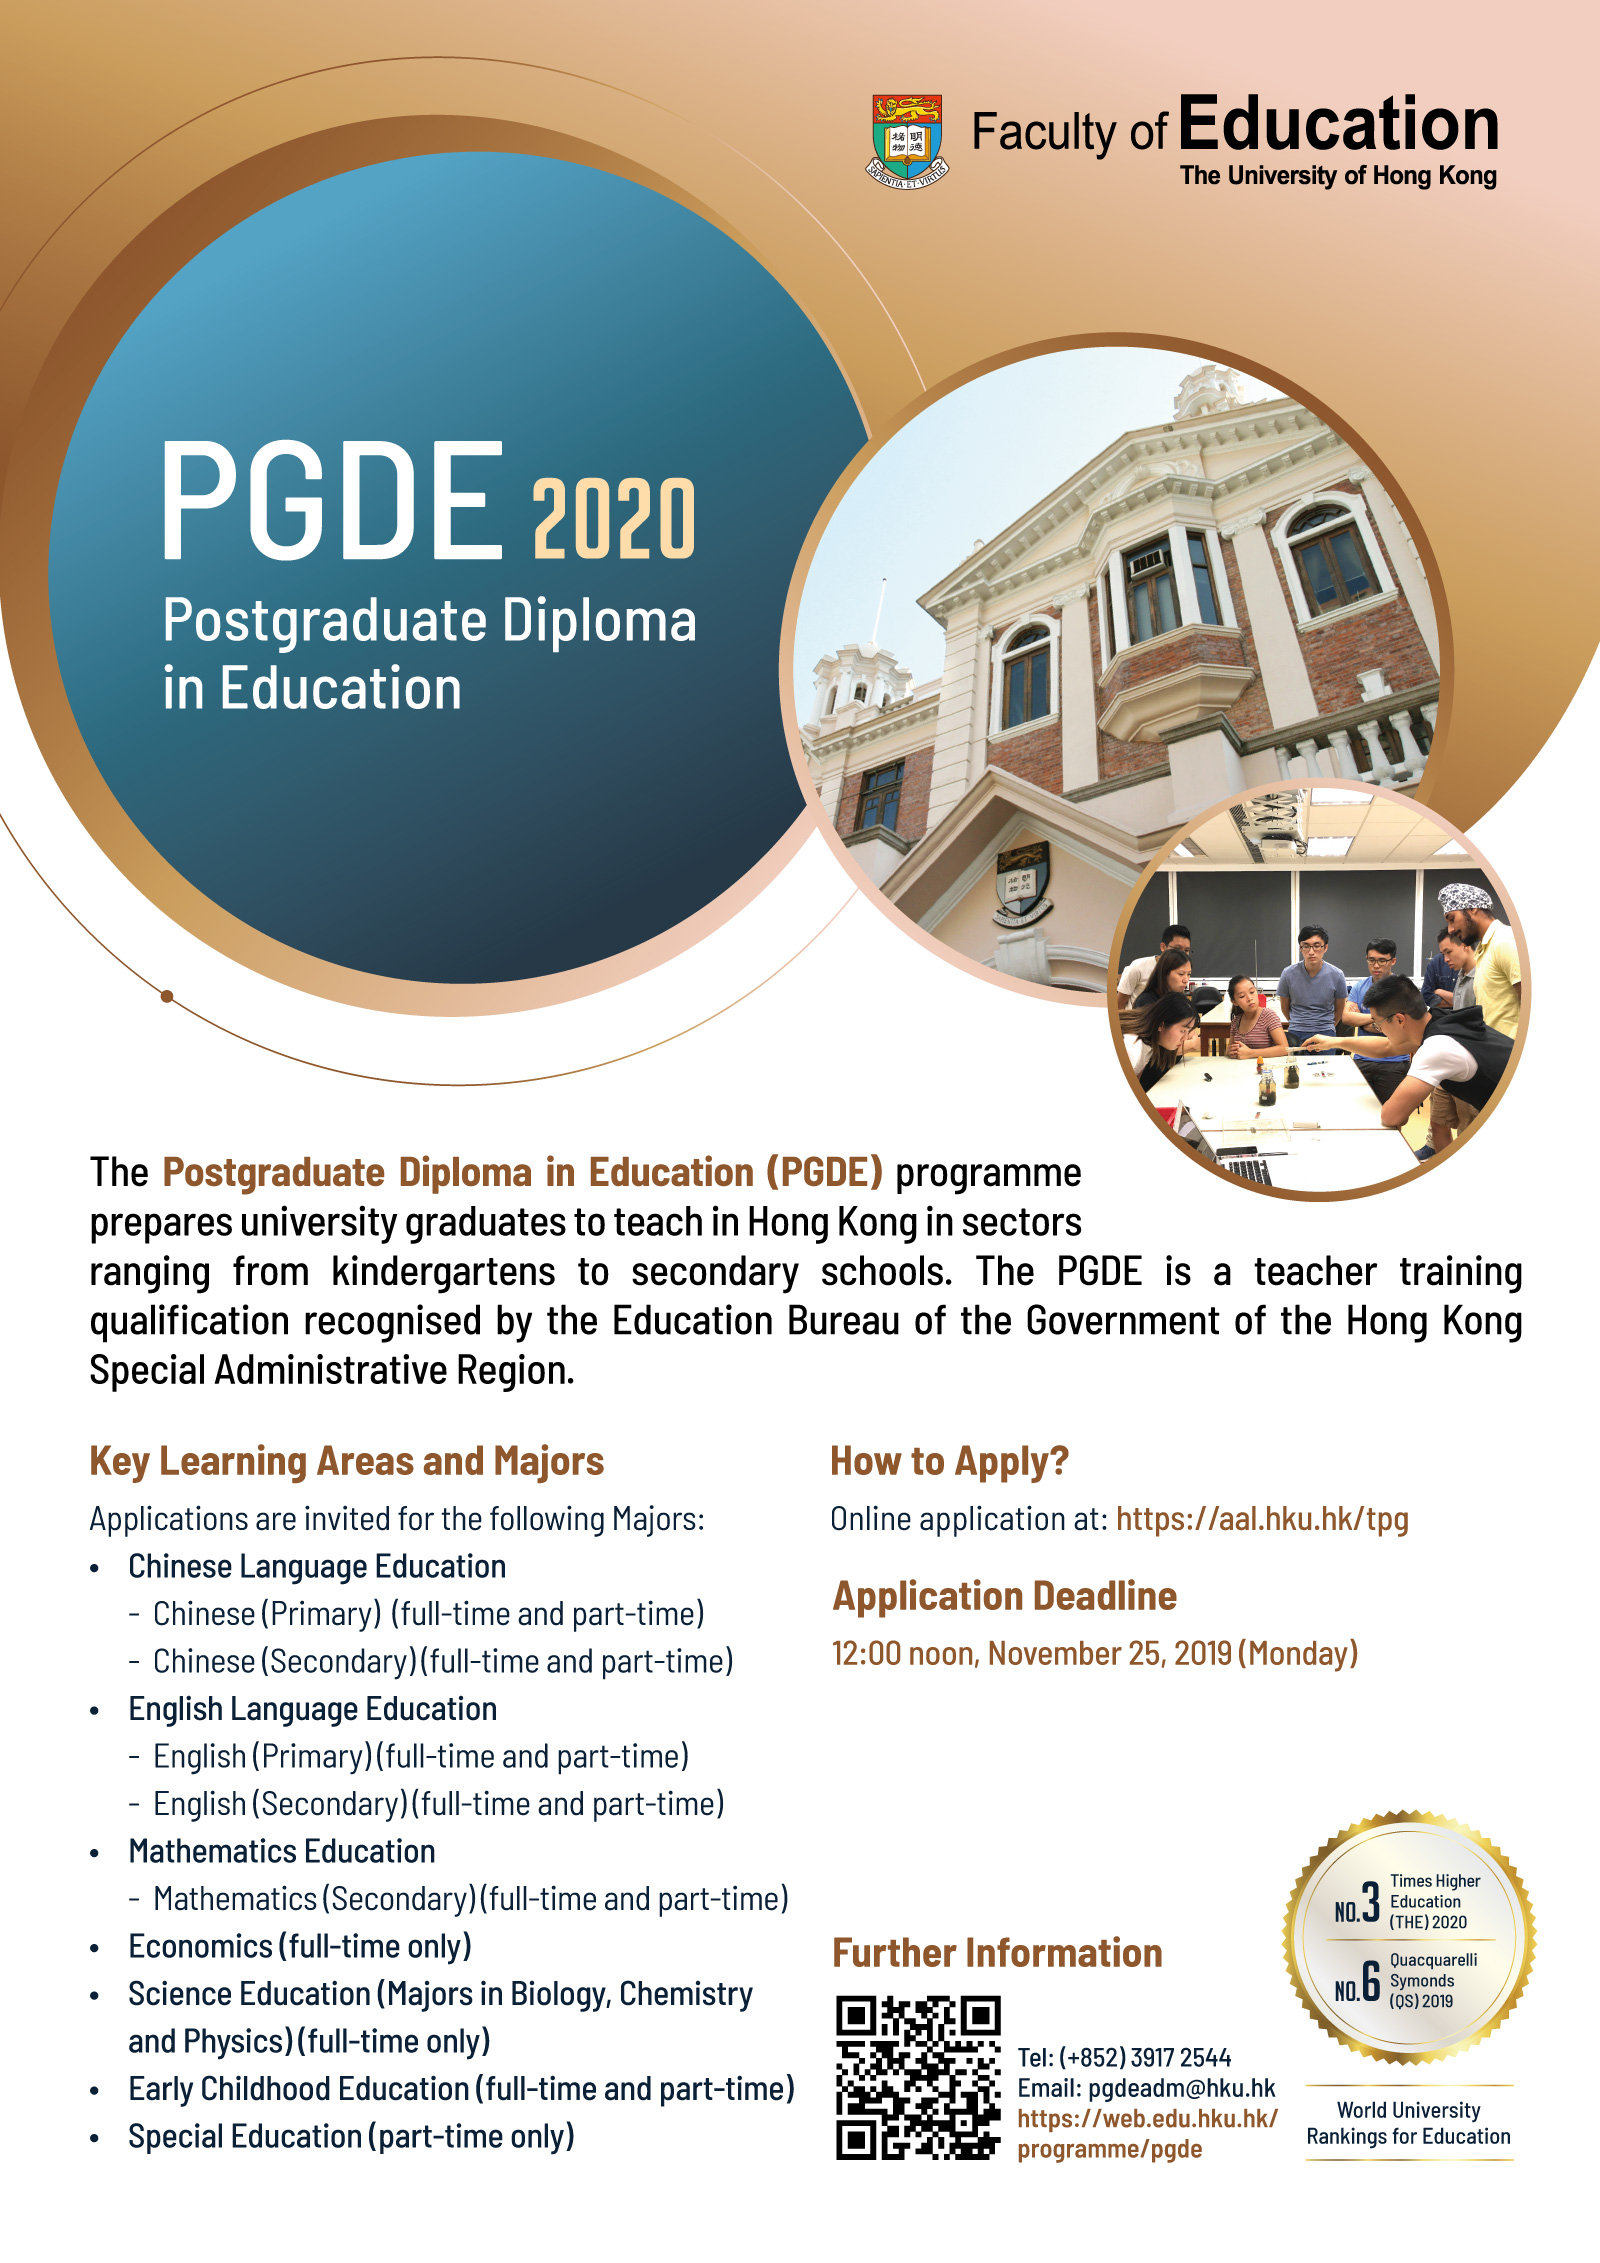 PGDE 2020 intake